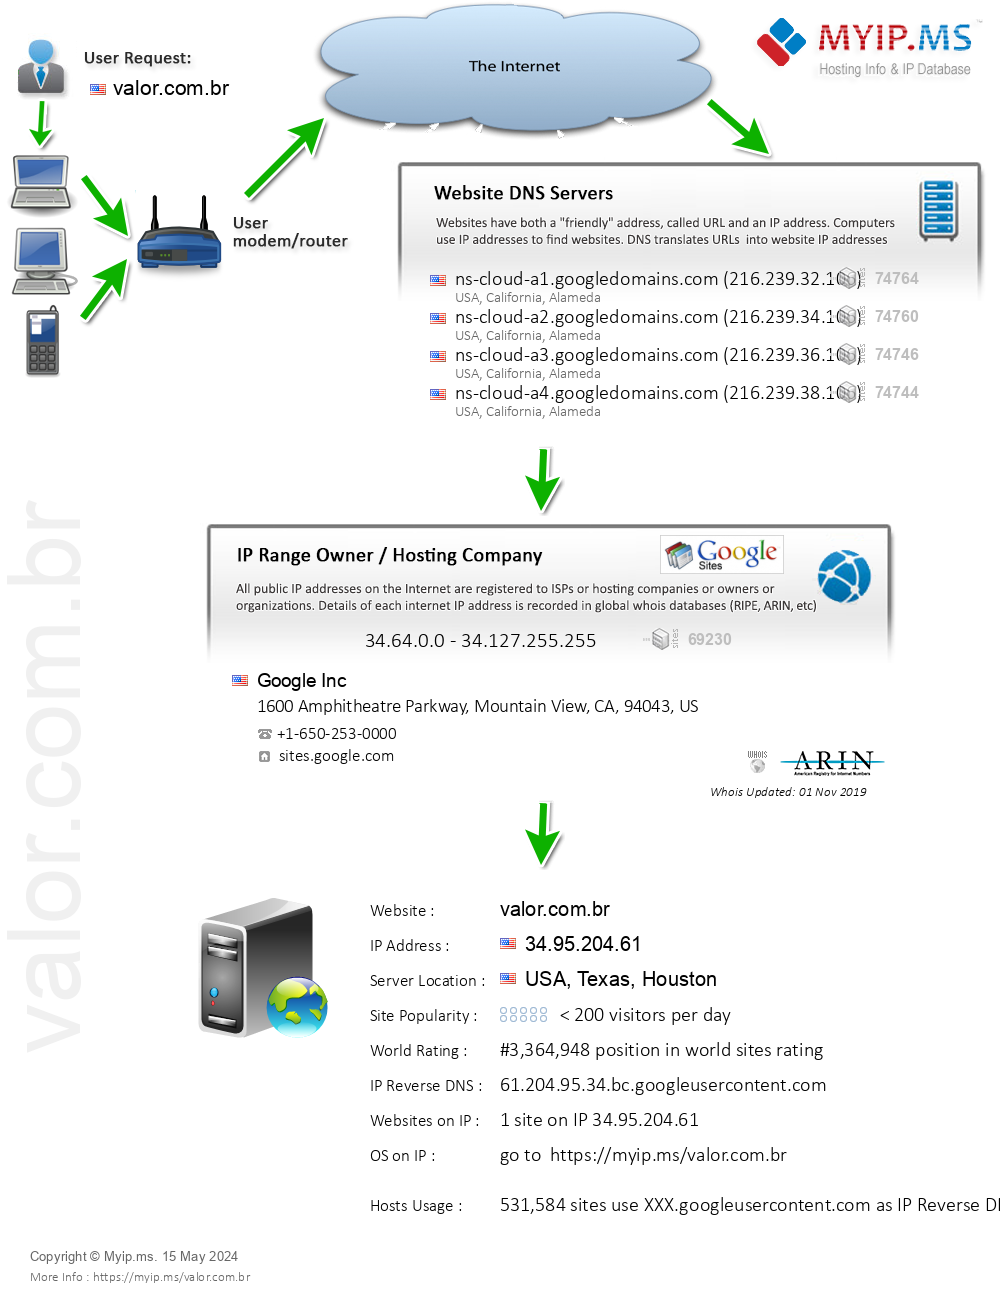 Valor.com.br - Website Hosting Visual IP Diagram